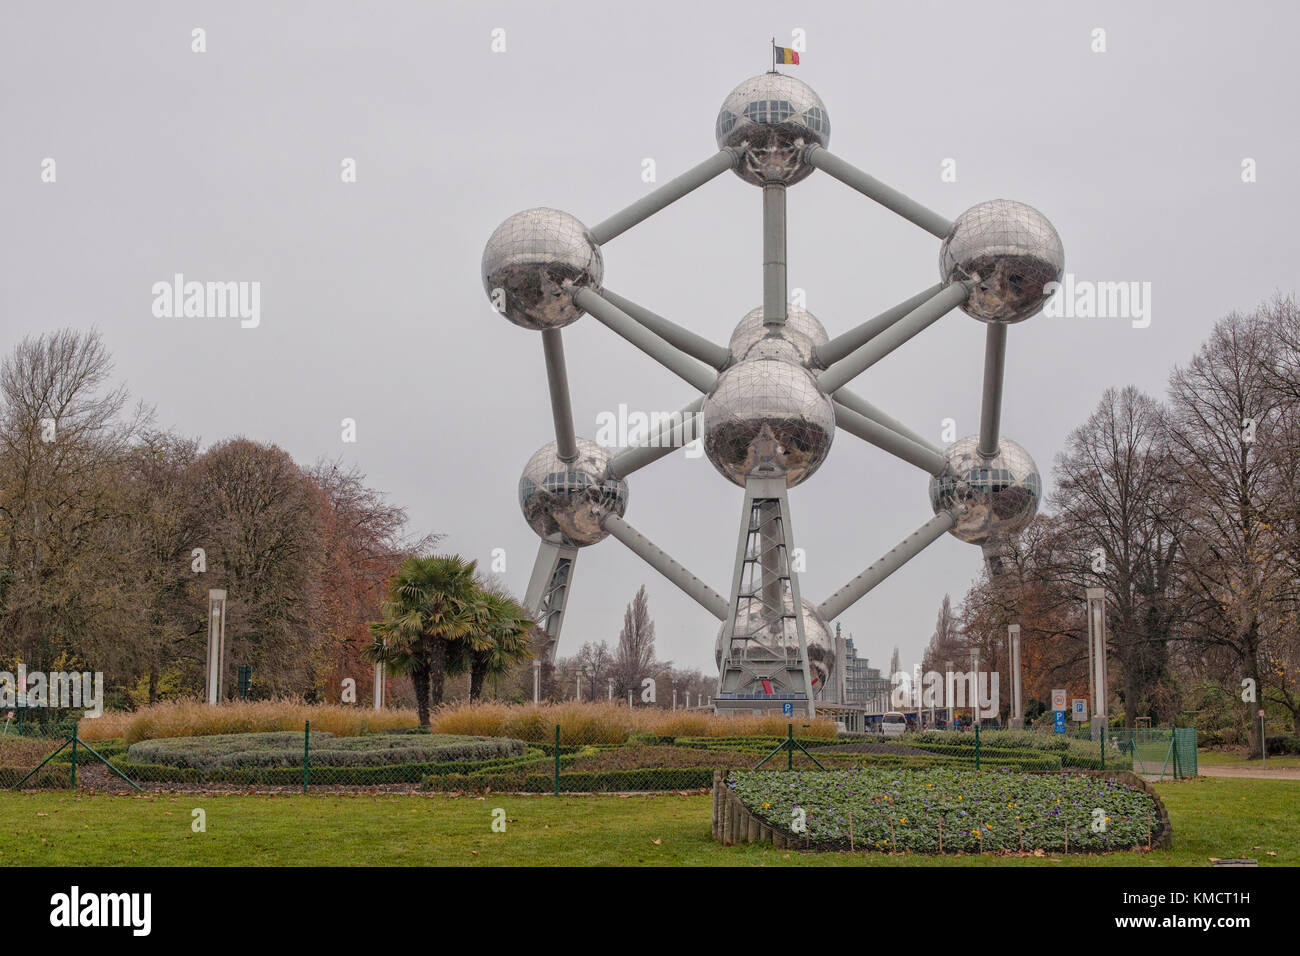 BRUSSEL, BELGIUM- DEC 7: The Atomium structure in Brussels, Belgium on December 7, 2014. The Atomium is a 102m tall building, originally built for Exp Stock Photo